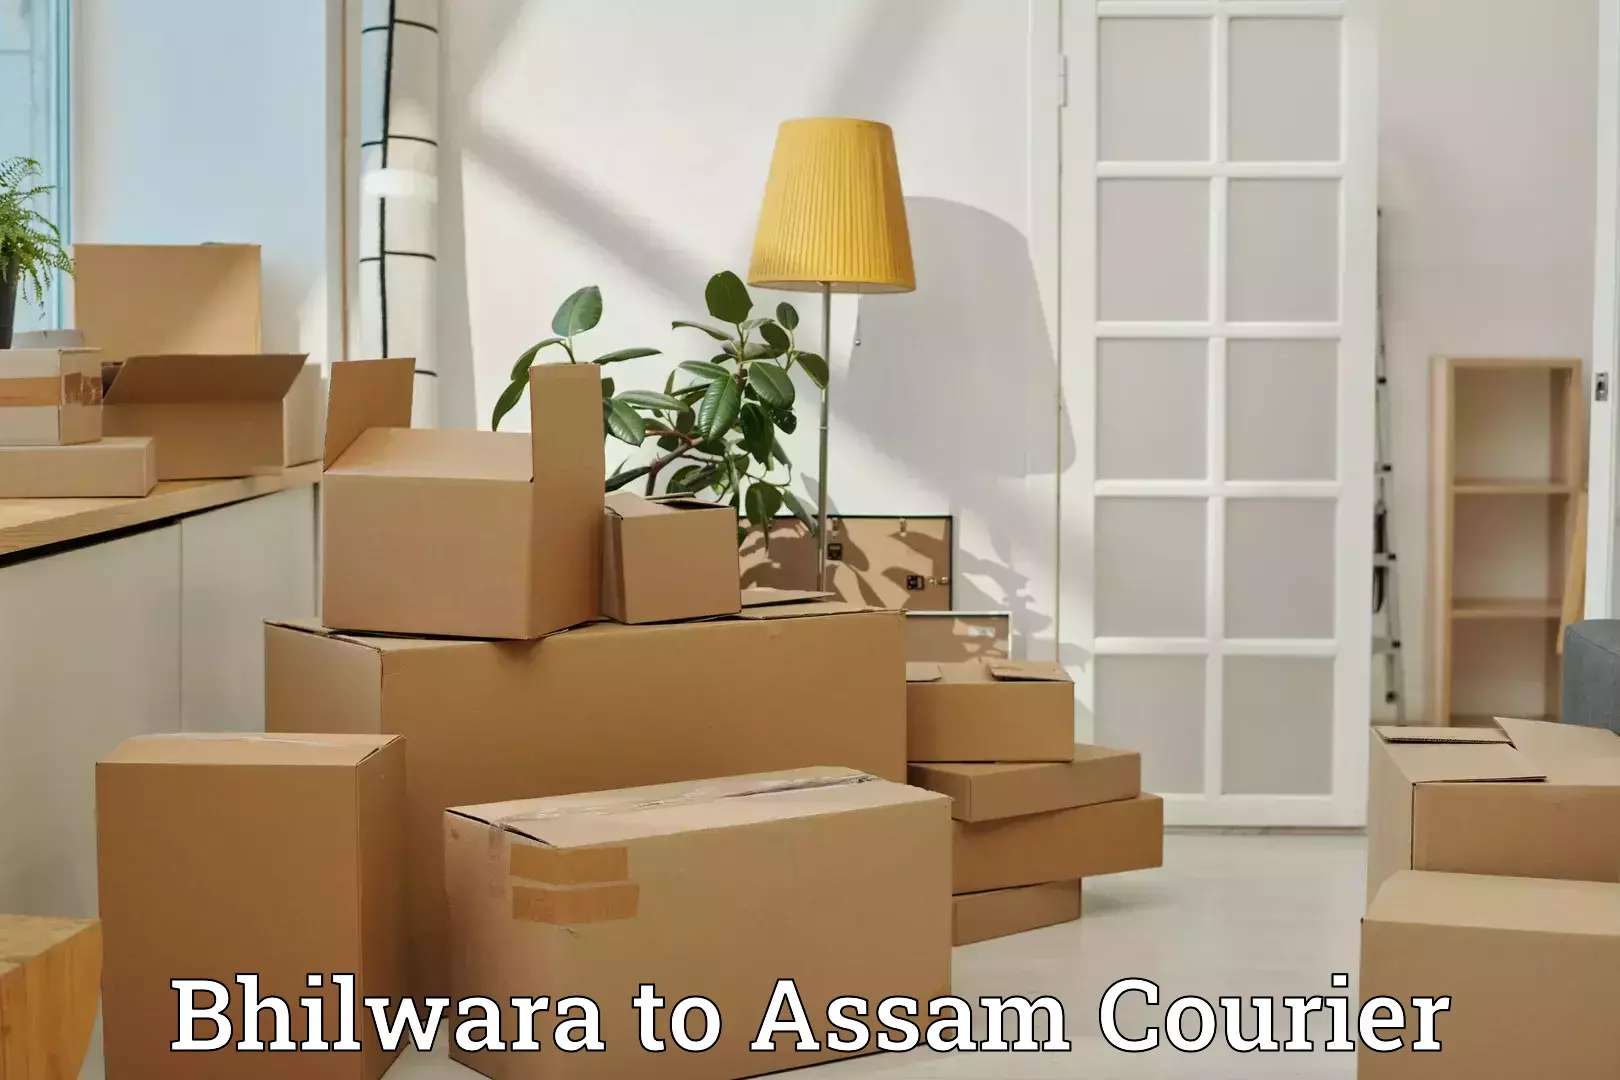 Luggage shipping service Bhilwara to Dhubri